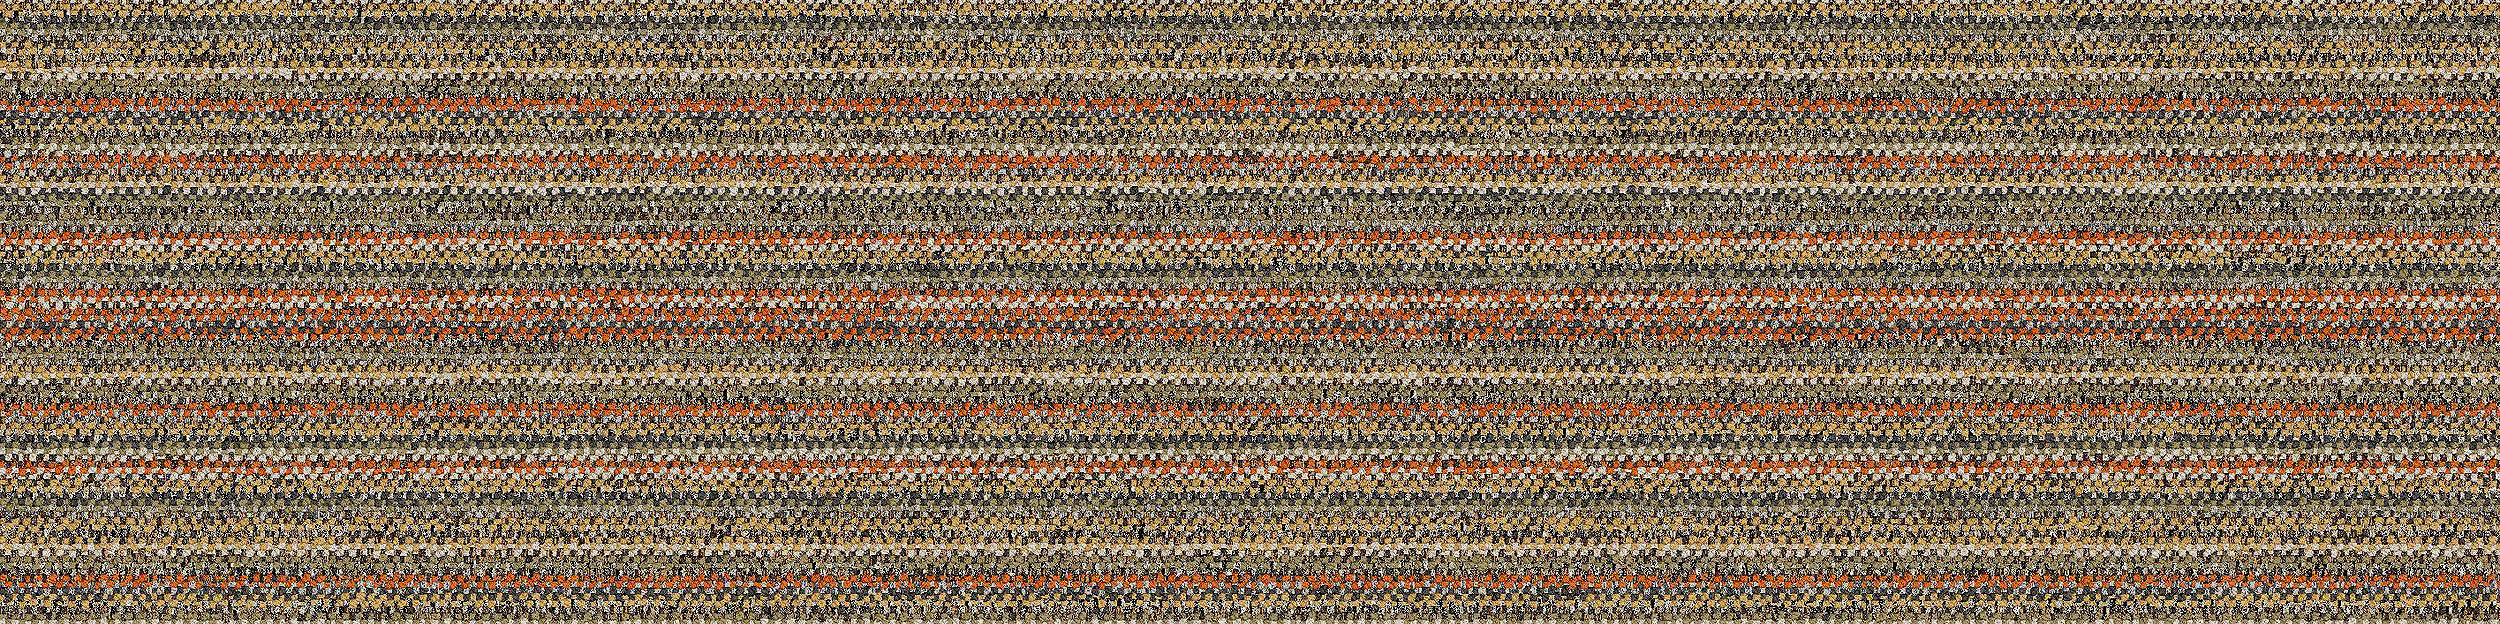 WW865 Carpet Tile In Autumn Warp Bildnummer 9